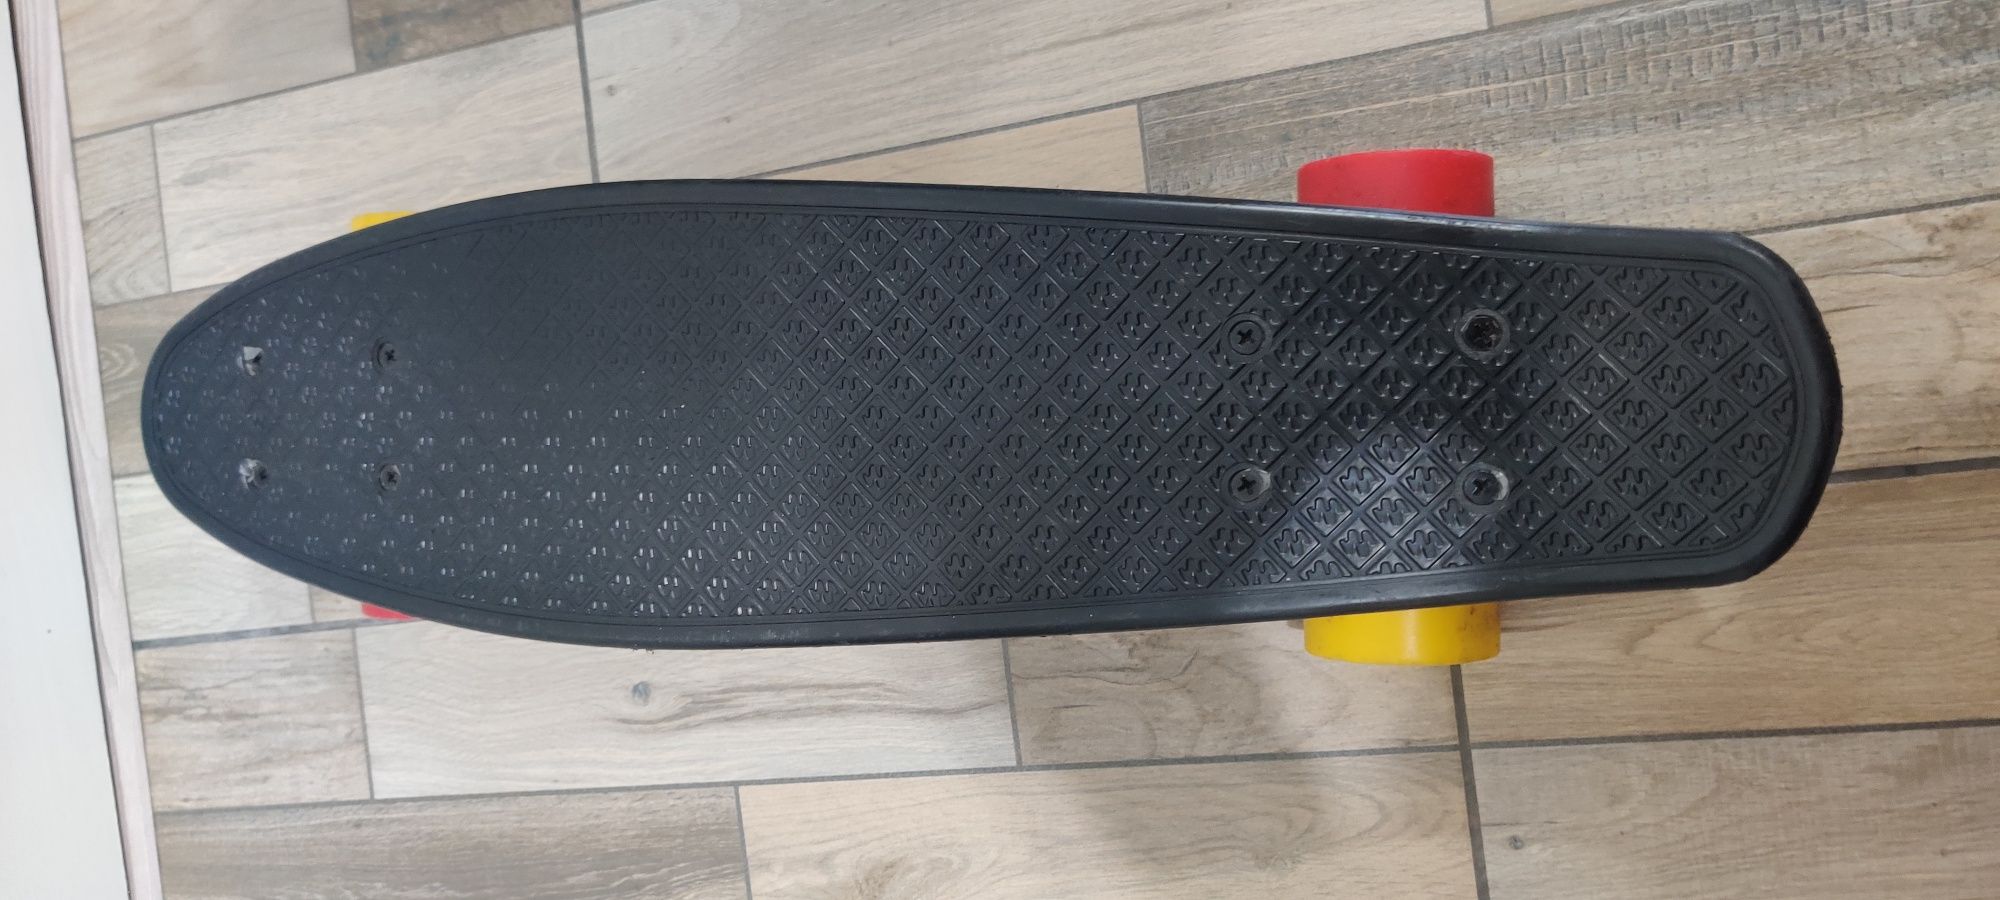 Penny board / skateboard copii